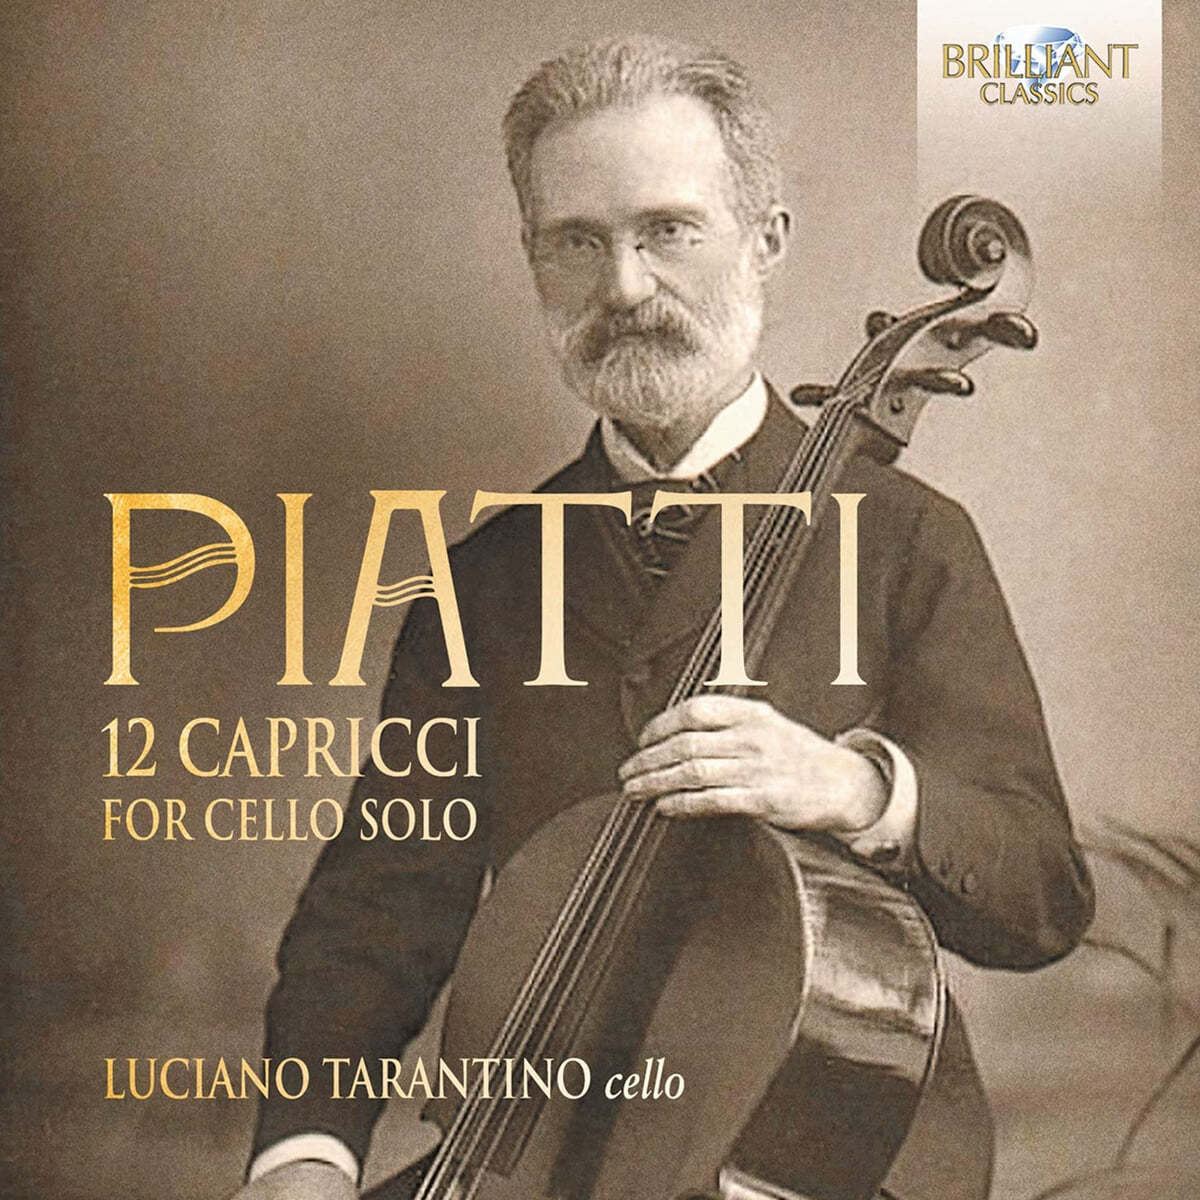 Luciano Tarantino 피아티: 첼로 독주를 위한 열두 개의 카프리스 (Piatti: 12 Capricci Op.25 for Cello Solo) 